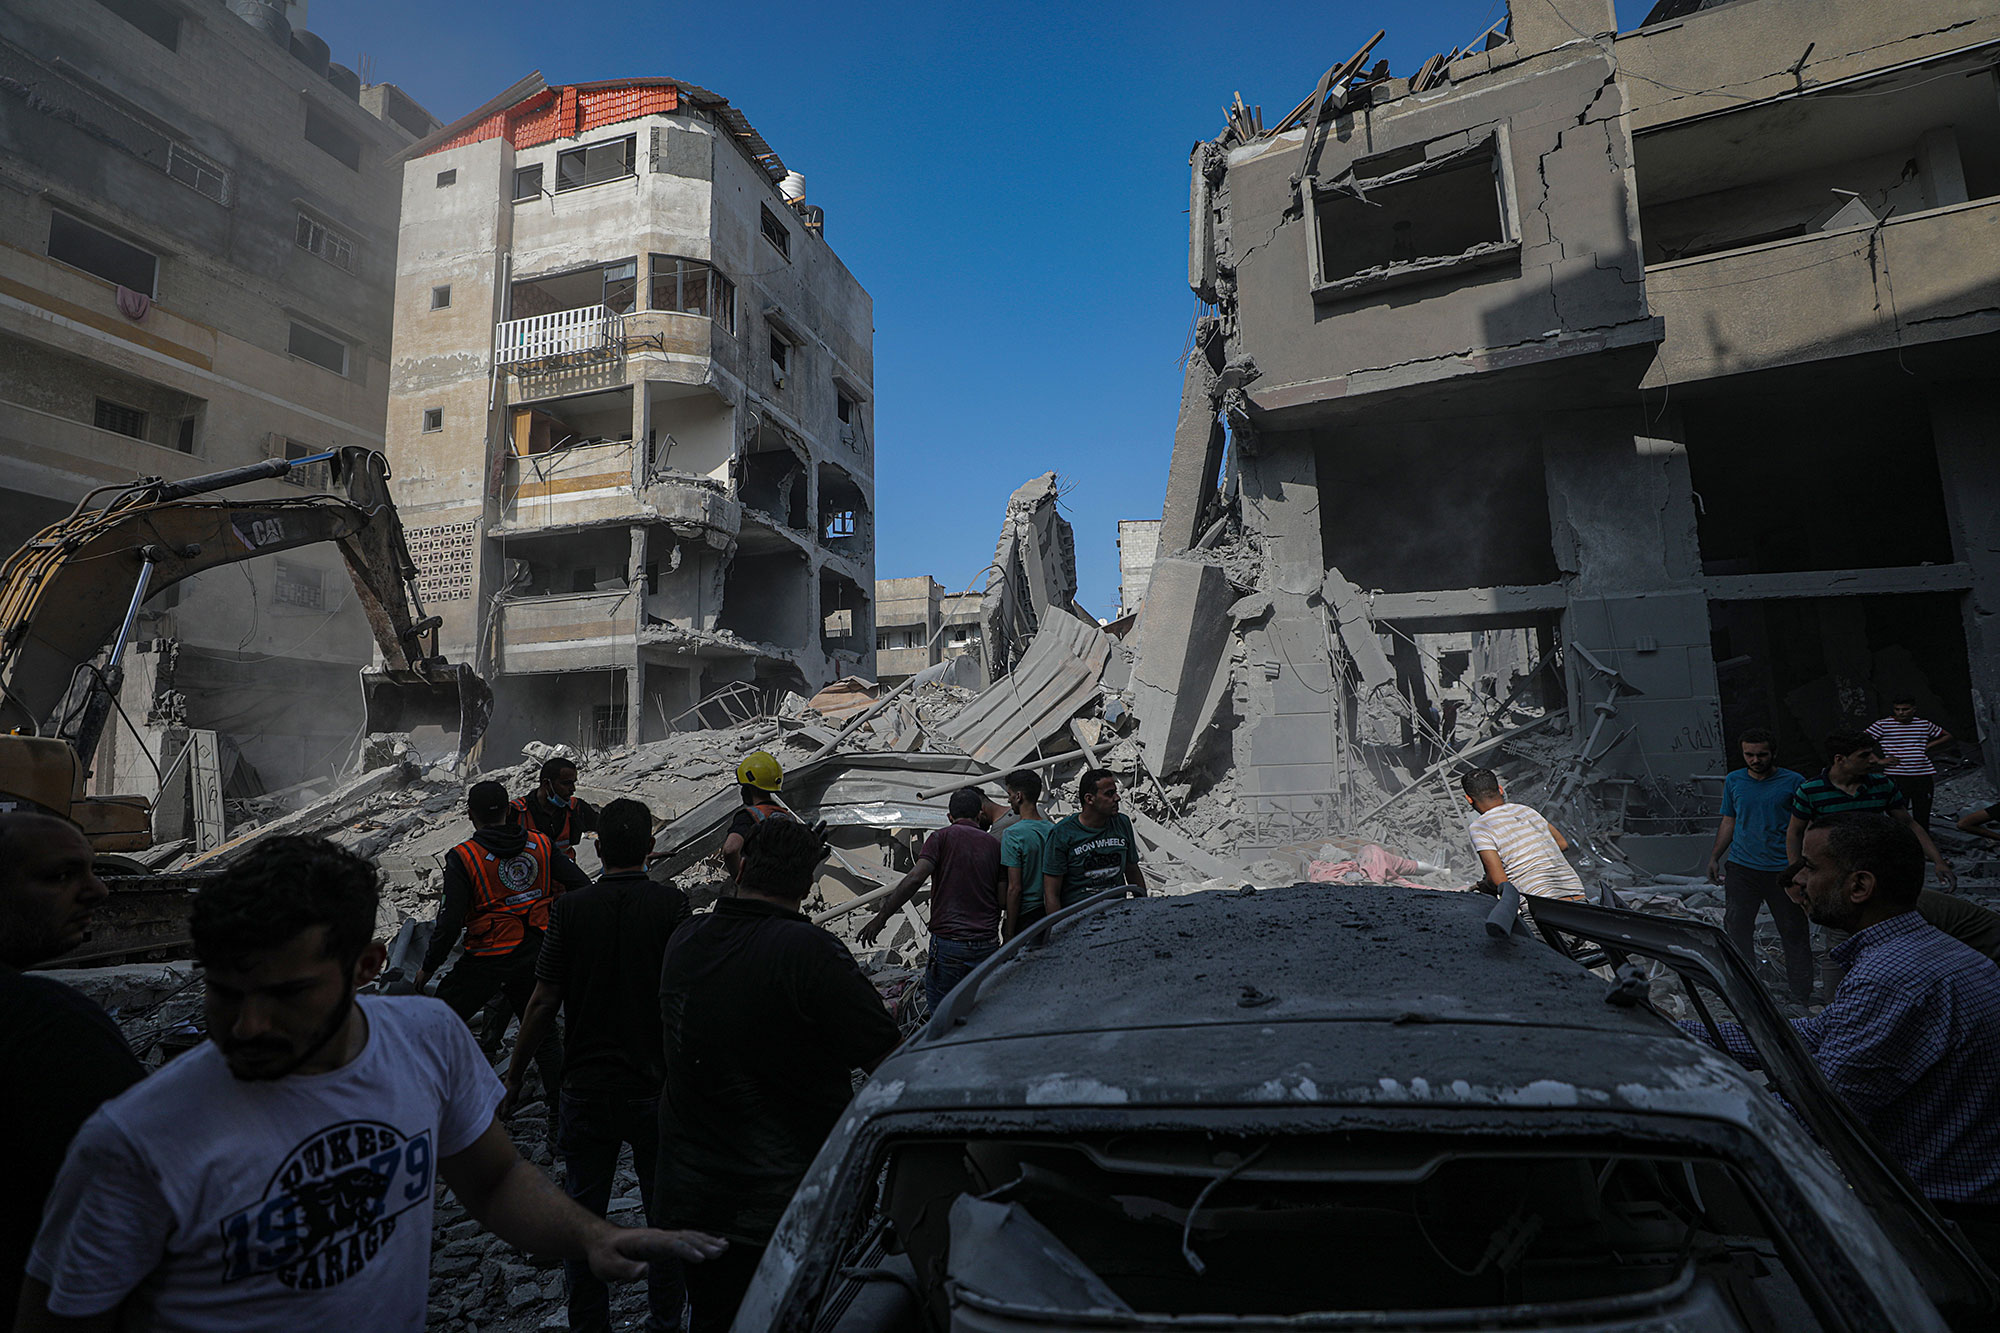 الكارثة الإنسانية تتفاقم: قصف إسرائيلي مروع يخلف أعدادا مروعة من القتلى والجرحى في قطاع غزة